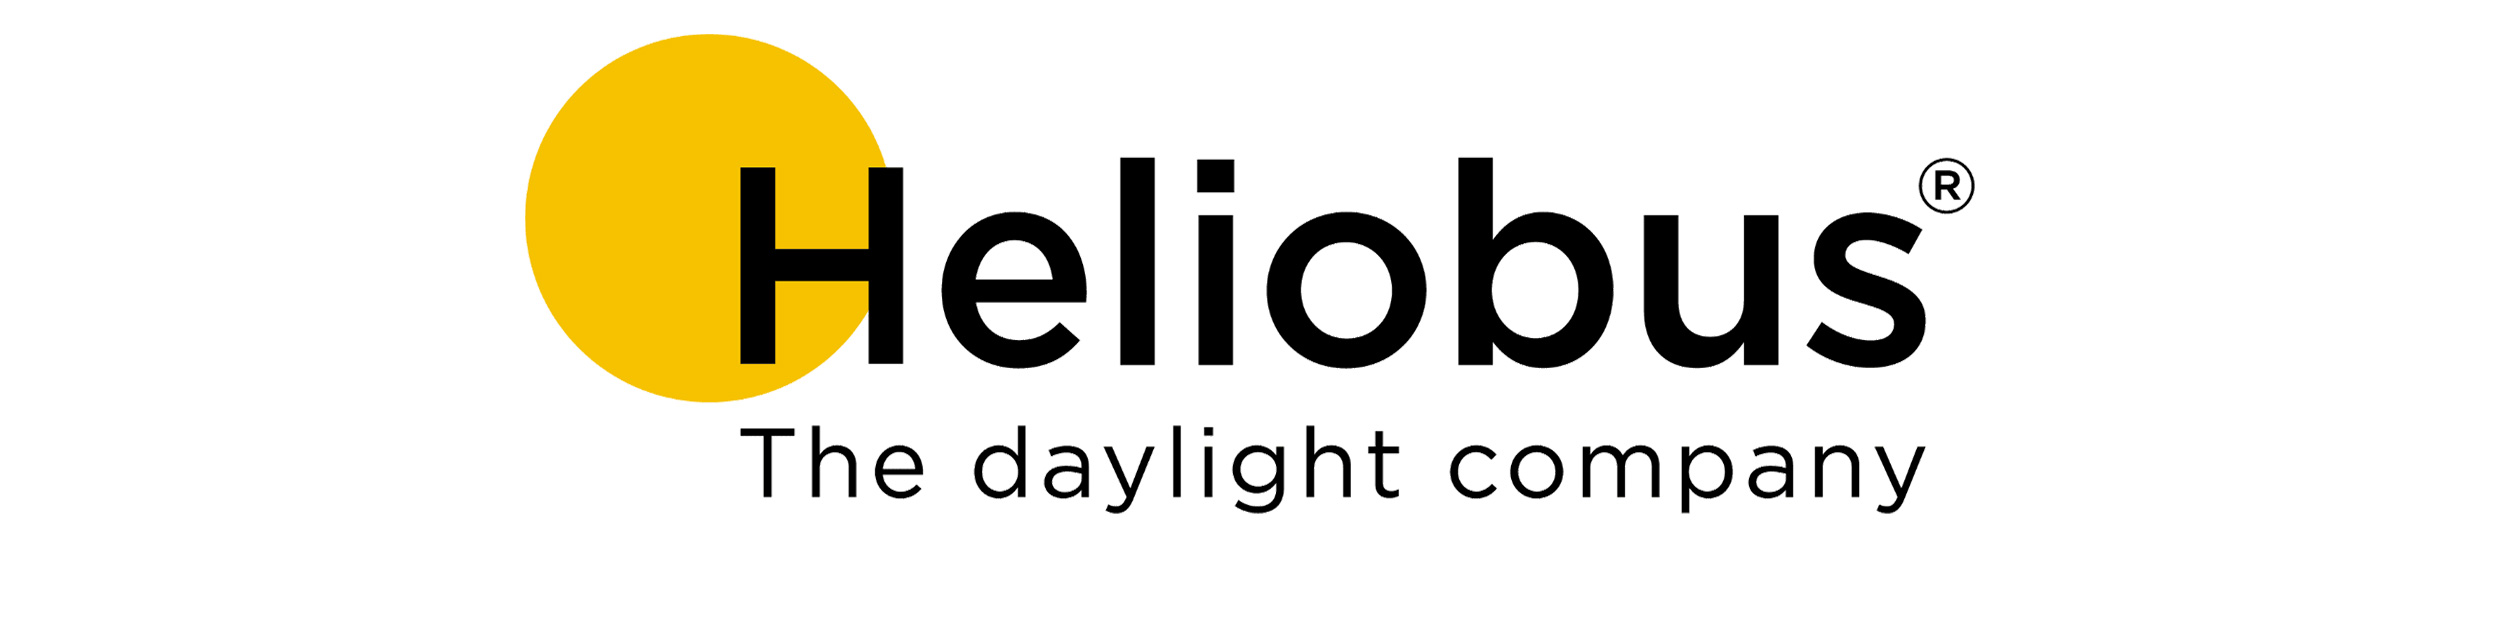 heliobus-logo